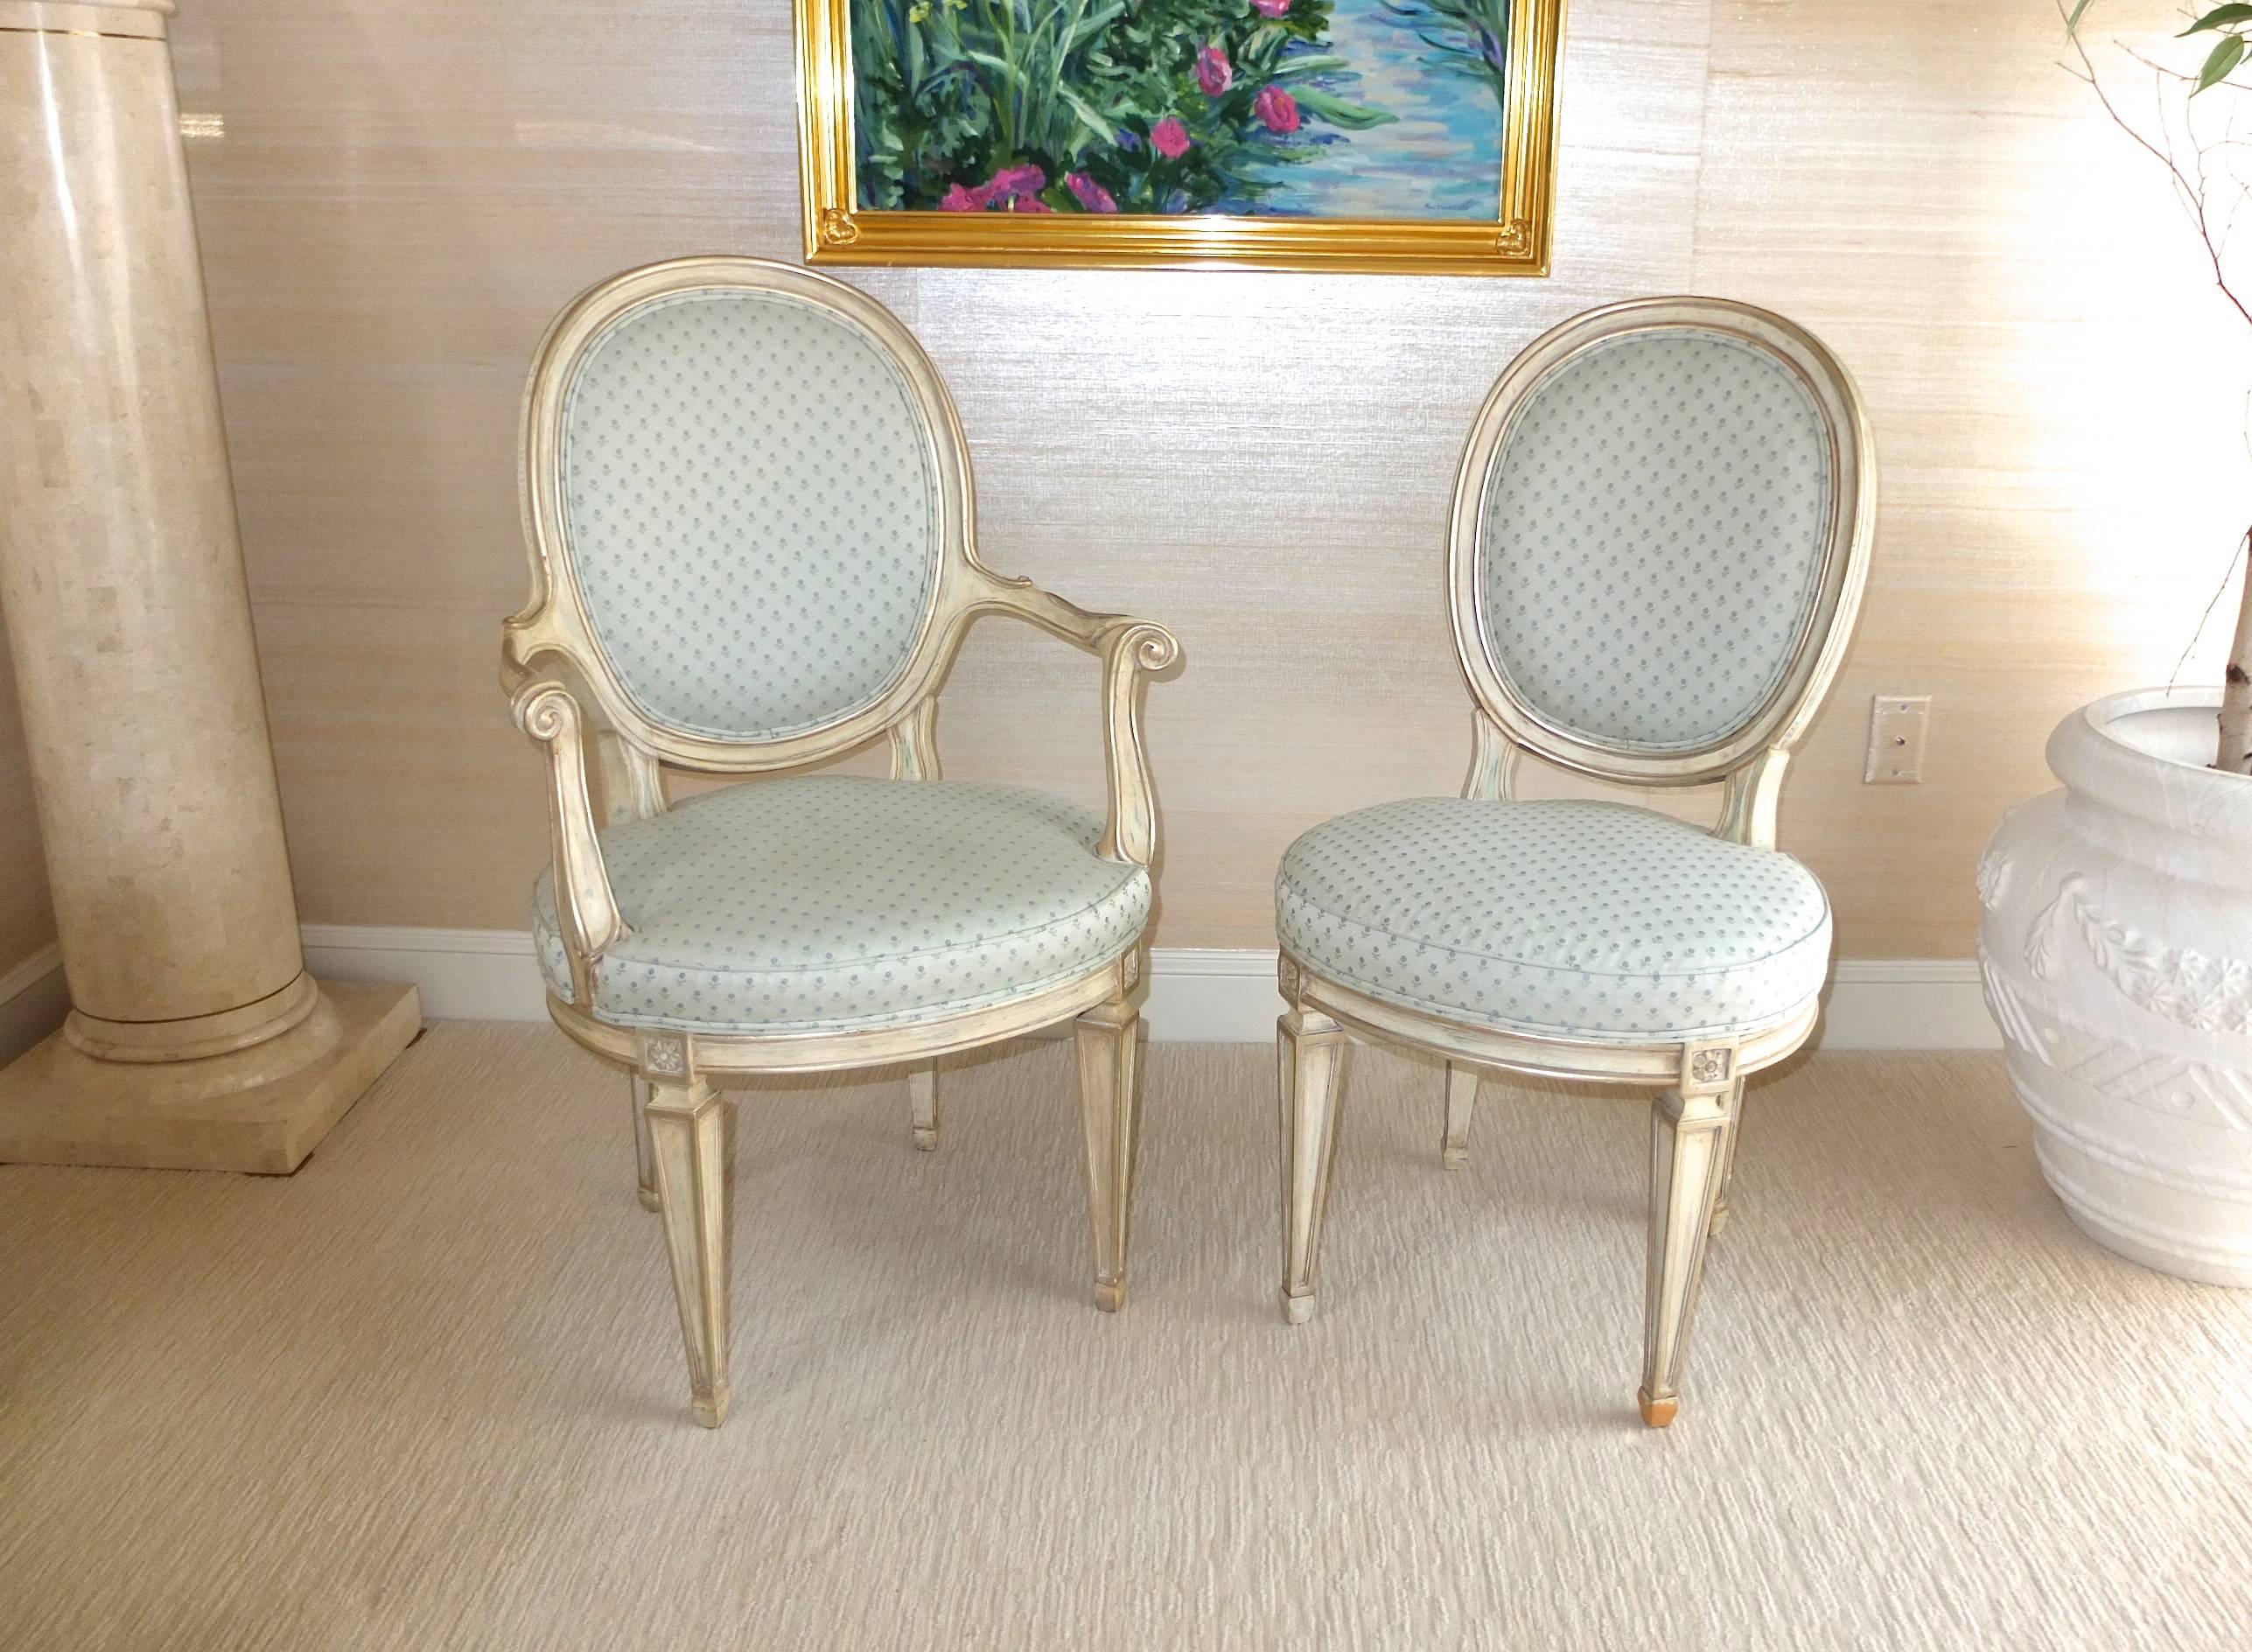 Ein gemischtes Paar (eines mit Armlehnen) von ovalen Stühlen im Louis XV-Stil, lackiert in Silber-Creme mit kleinem Blattmuster aus Baumwolle und Seide von Brunschwig & Fils in einer blassen aquafarbenen Polsterung. 
Abmessungen des Stuhls ohne